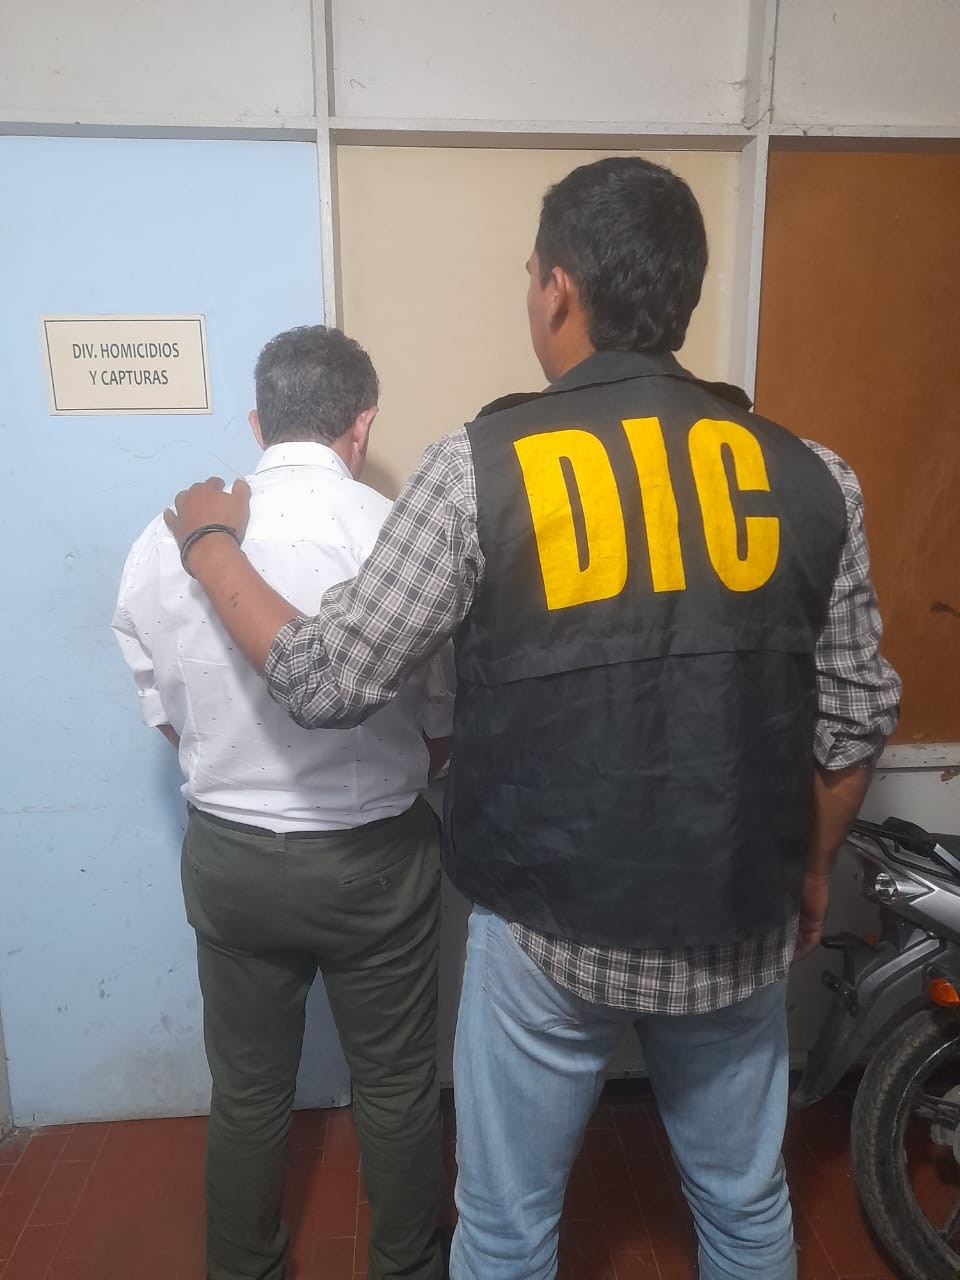 Estafaba exigiendo miles de pesos a cambio de aliviar condena de presos: detienen a supuesto falso abogado en la comisaría Segunda